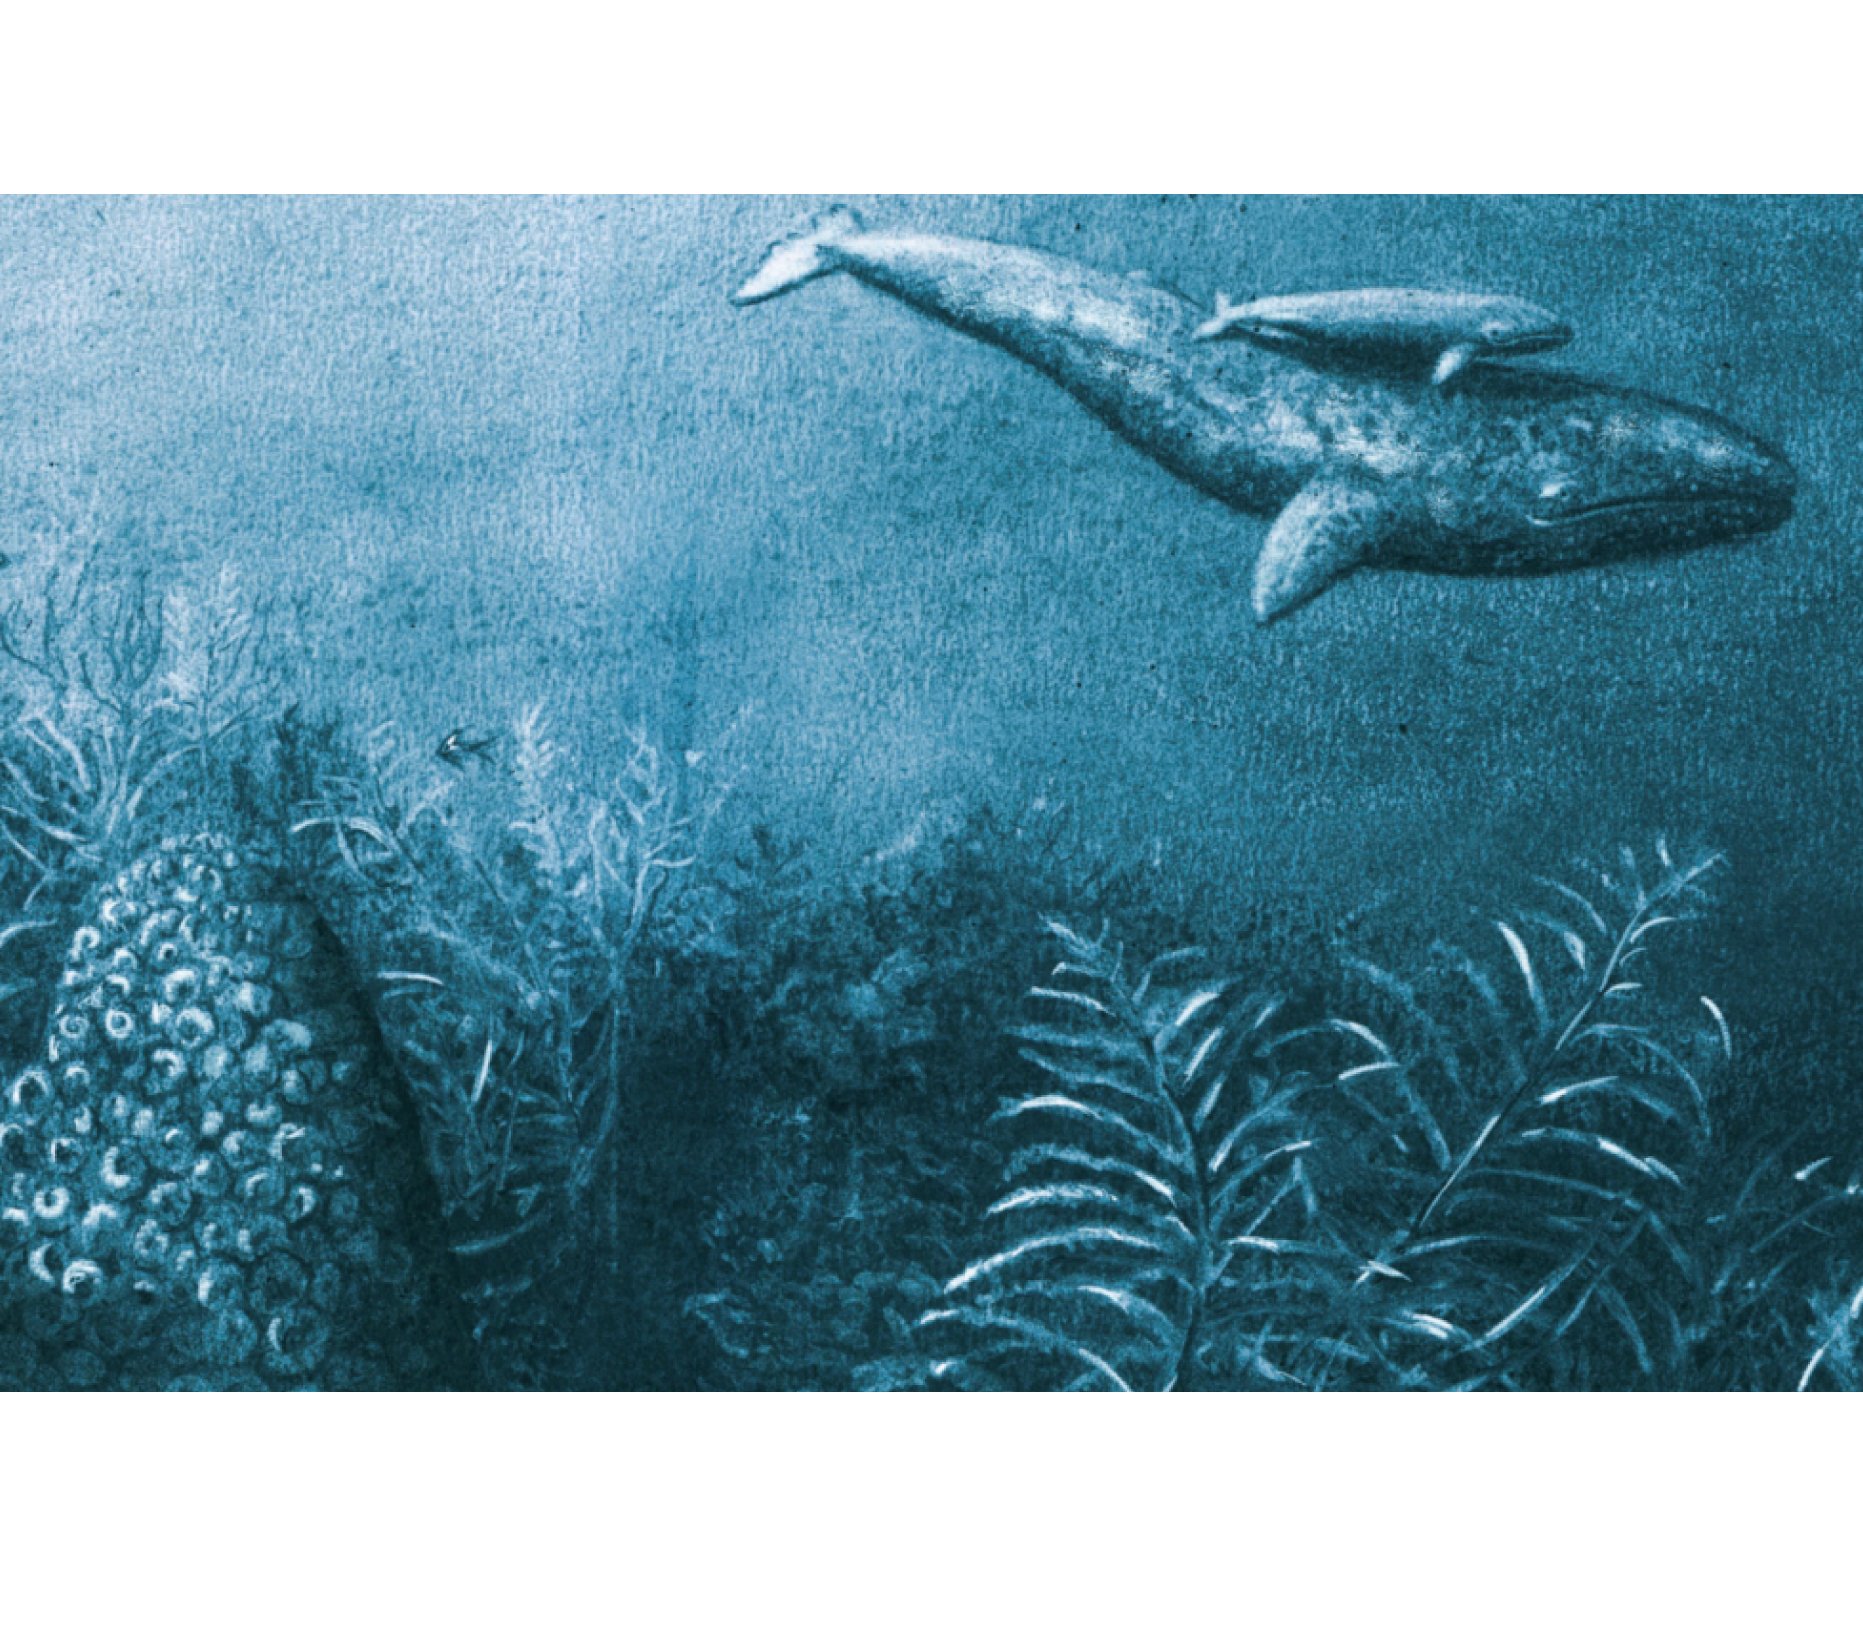 jo-weaver-whales-swimming-illustration.jpg